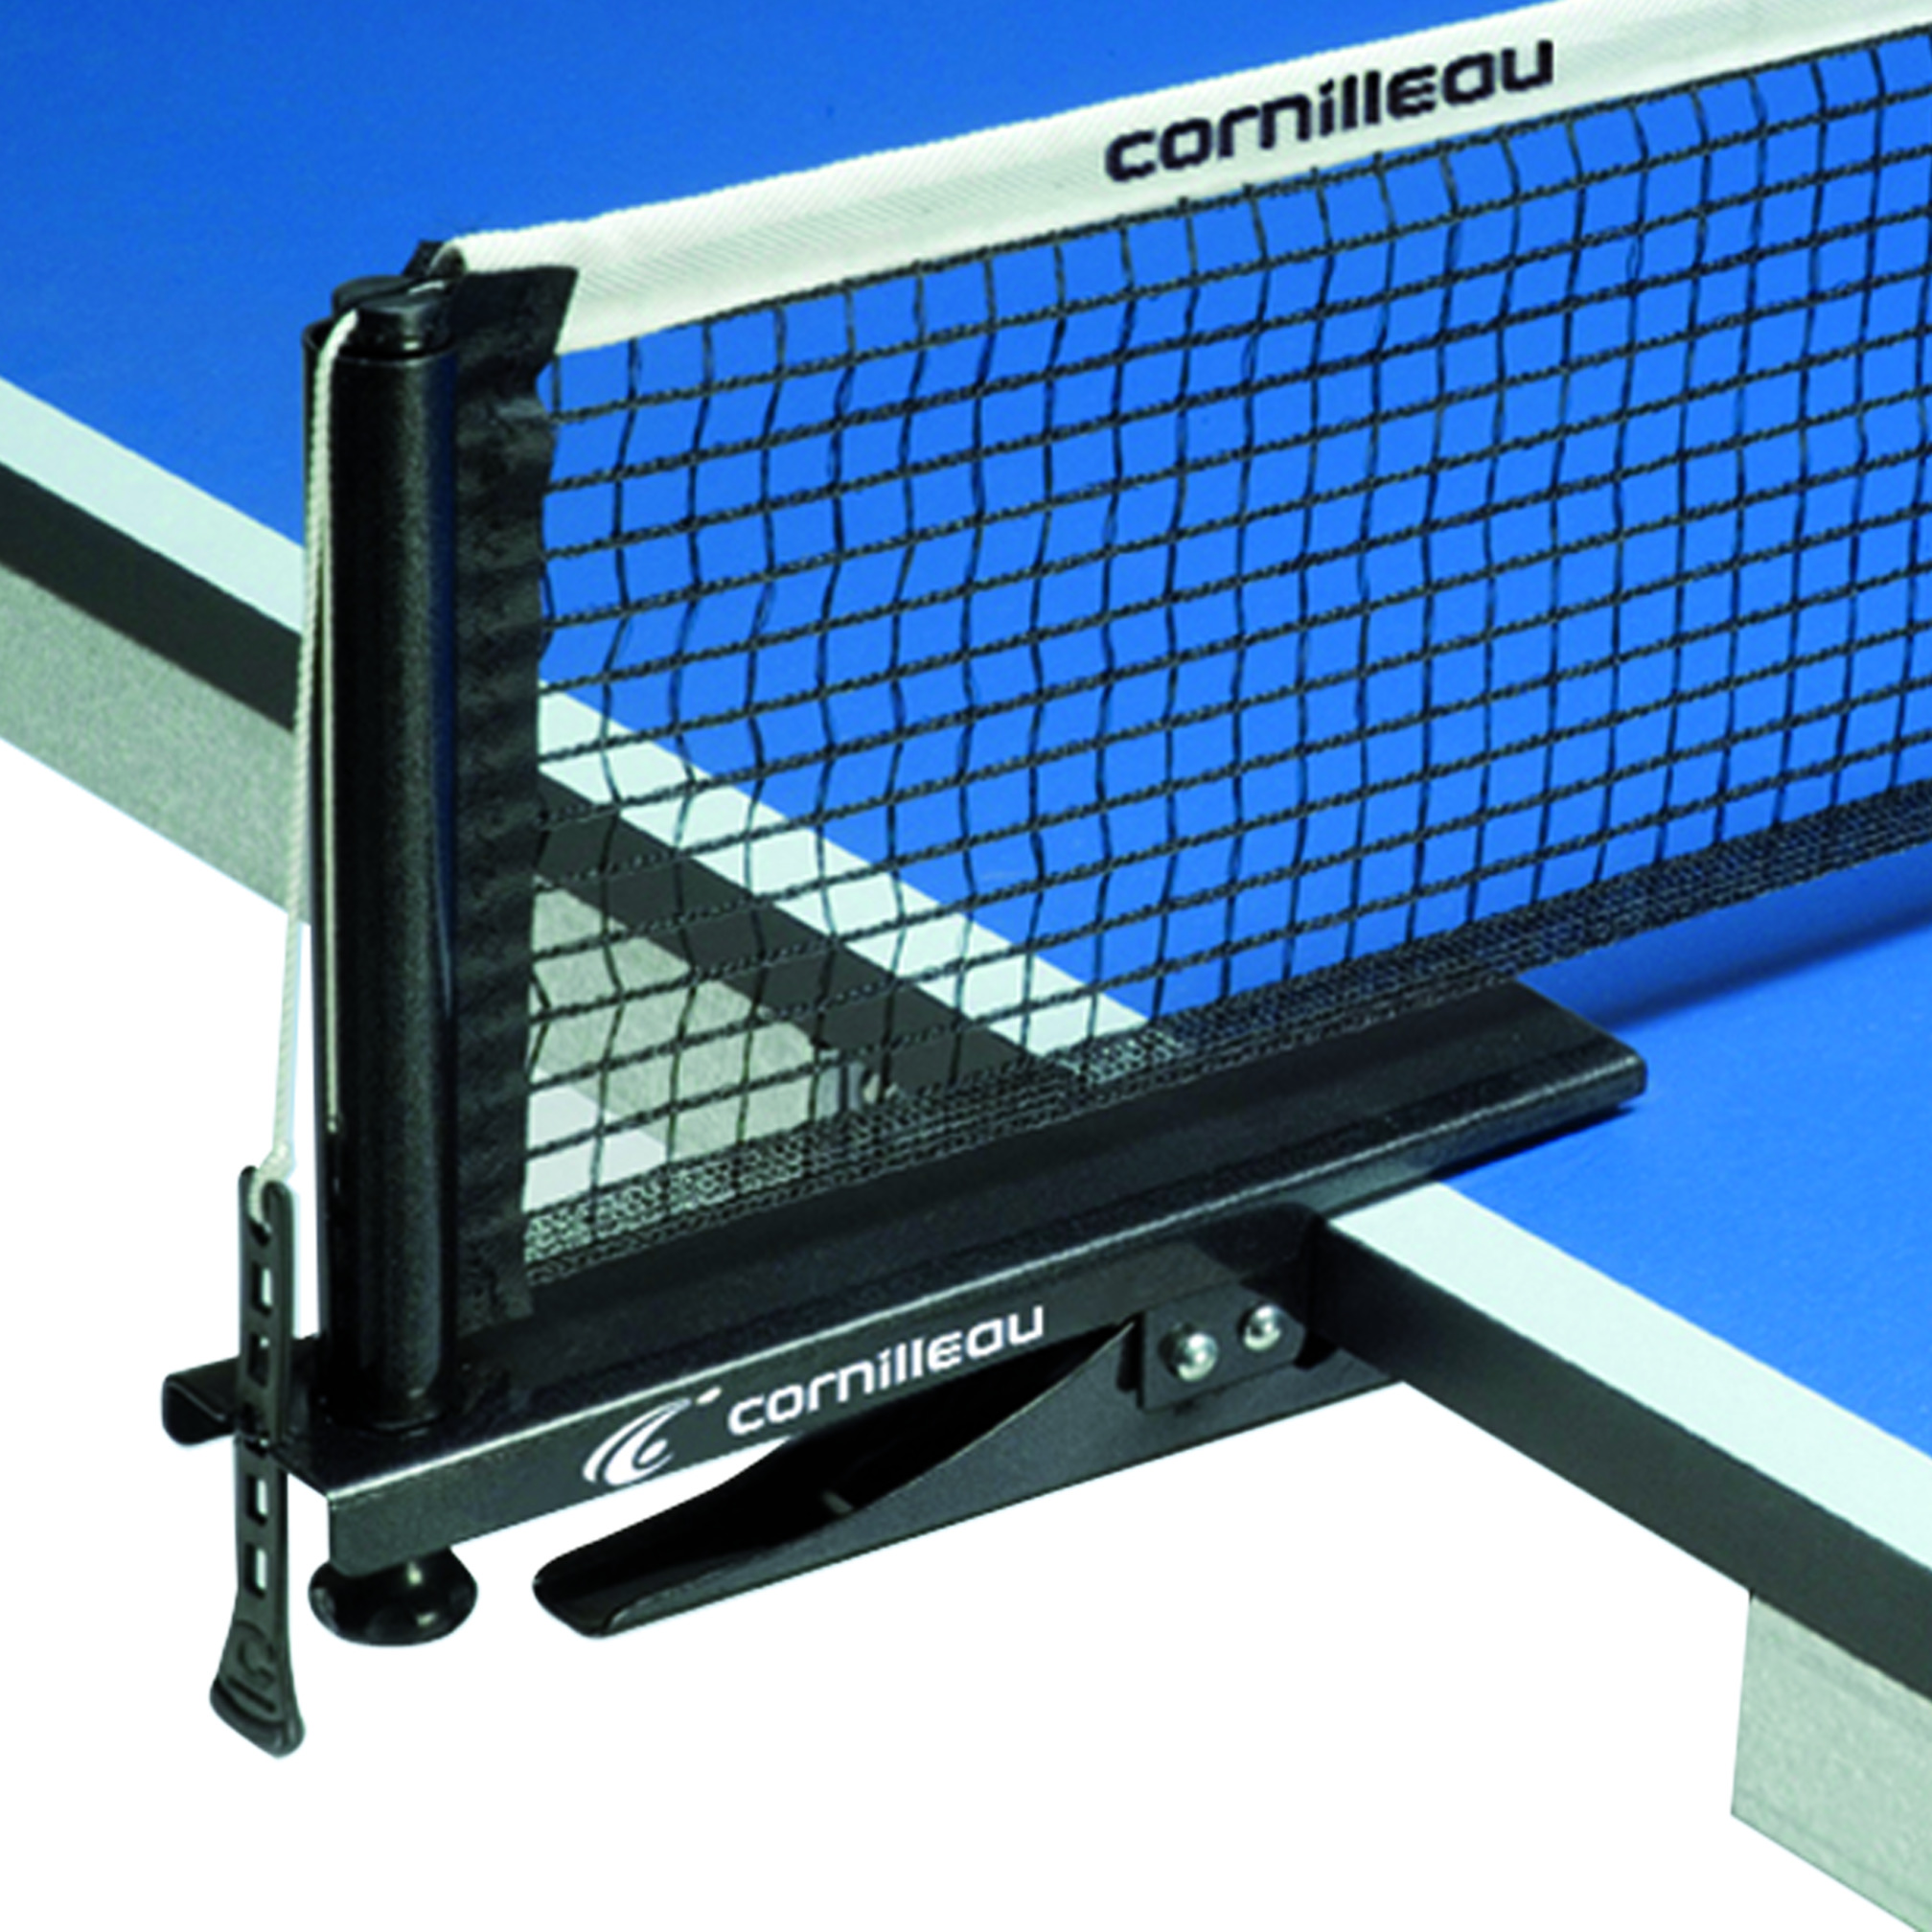 Cornilleau Tischtennis Pfosten und Netz Advance